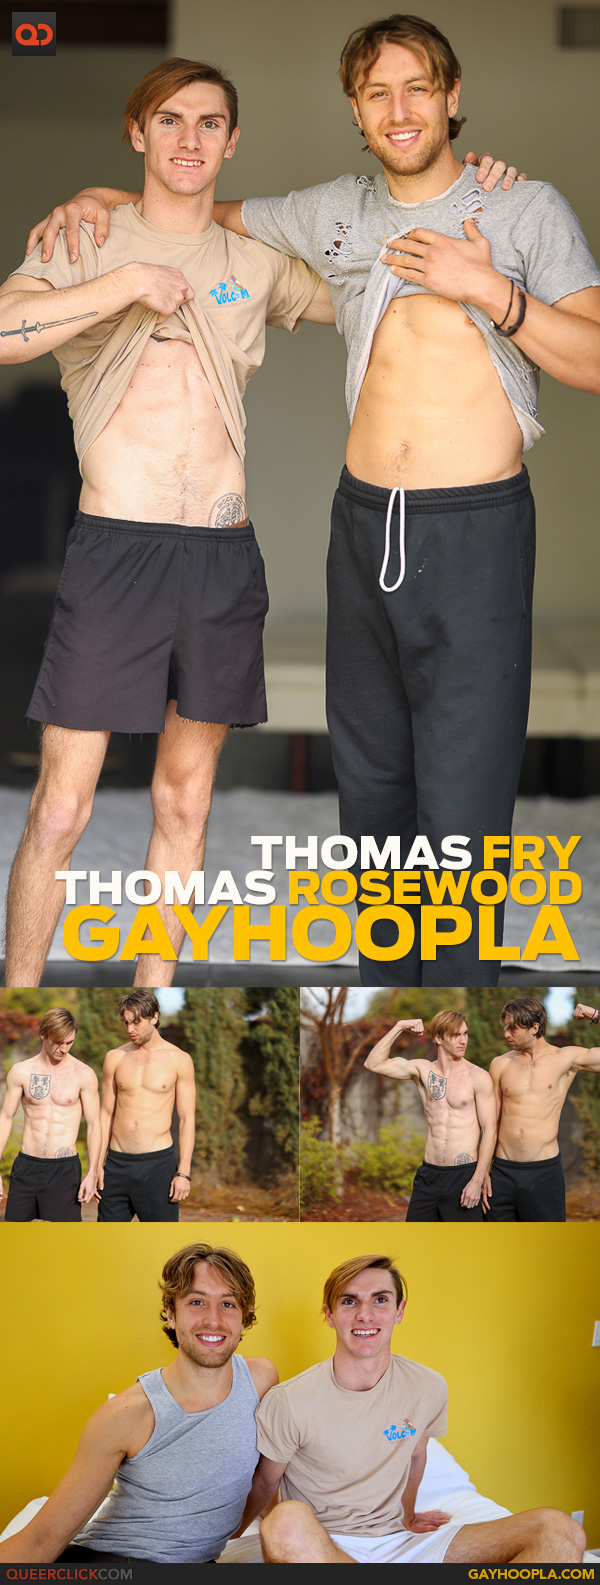 GayHoopla: Thomas Fry and Thomas Rosewood